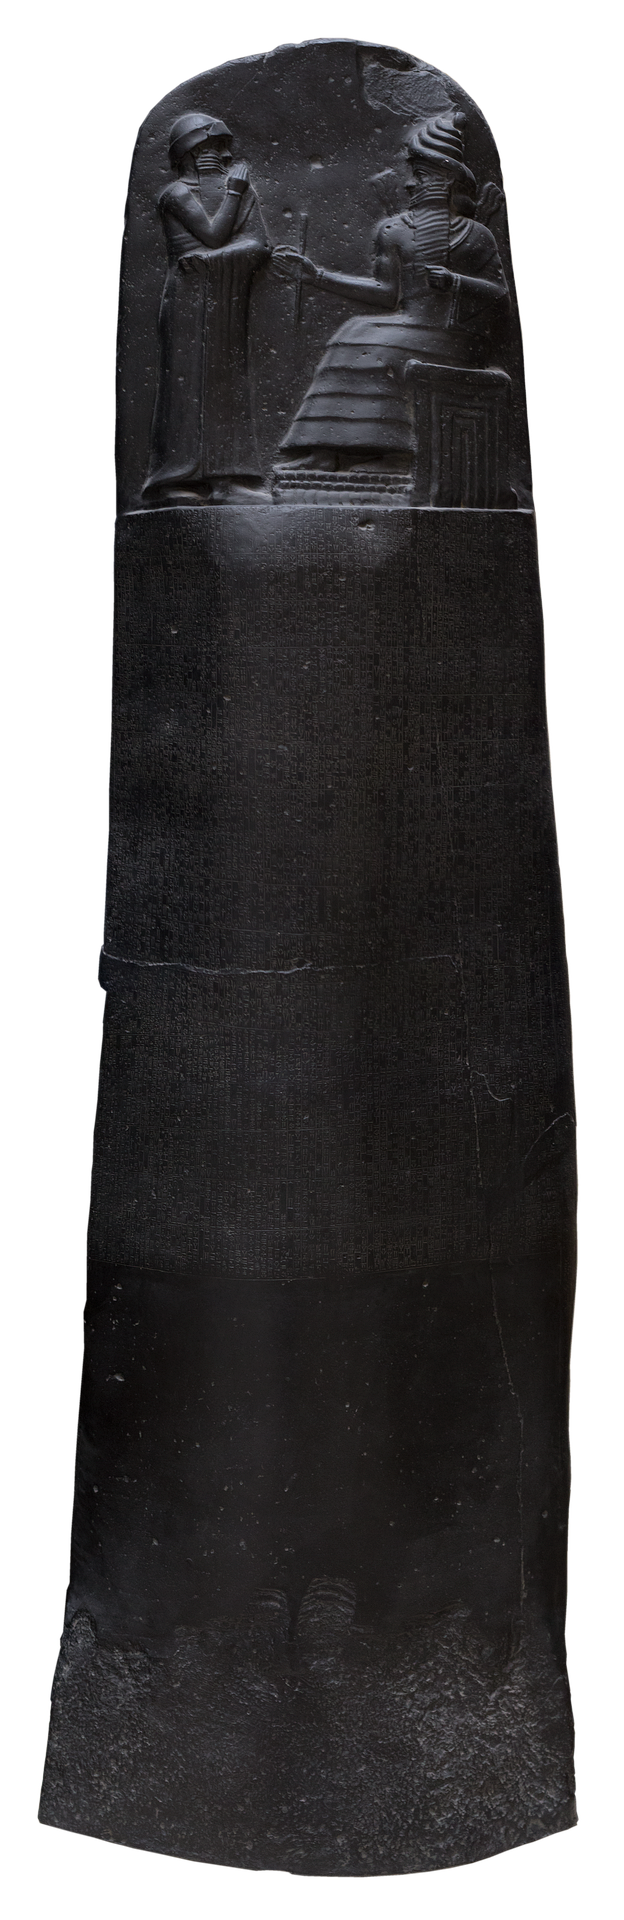 A black colored Code of Hammurabi at Louvre museum